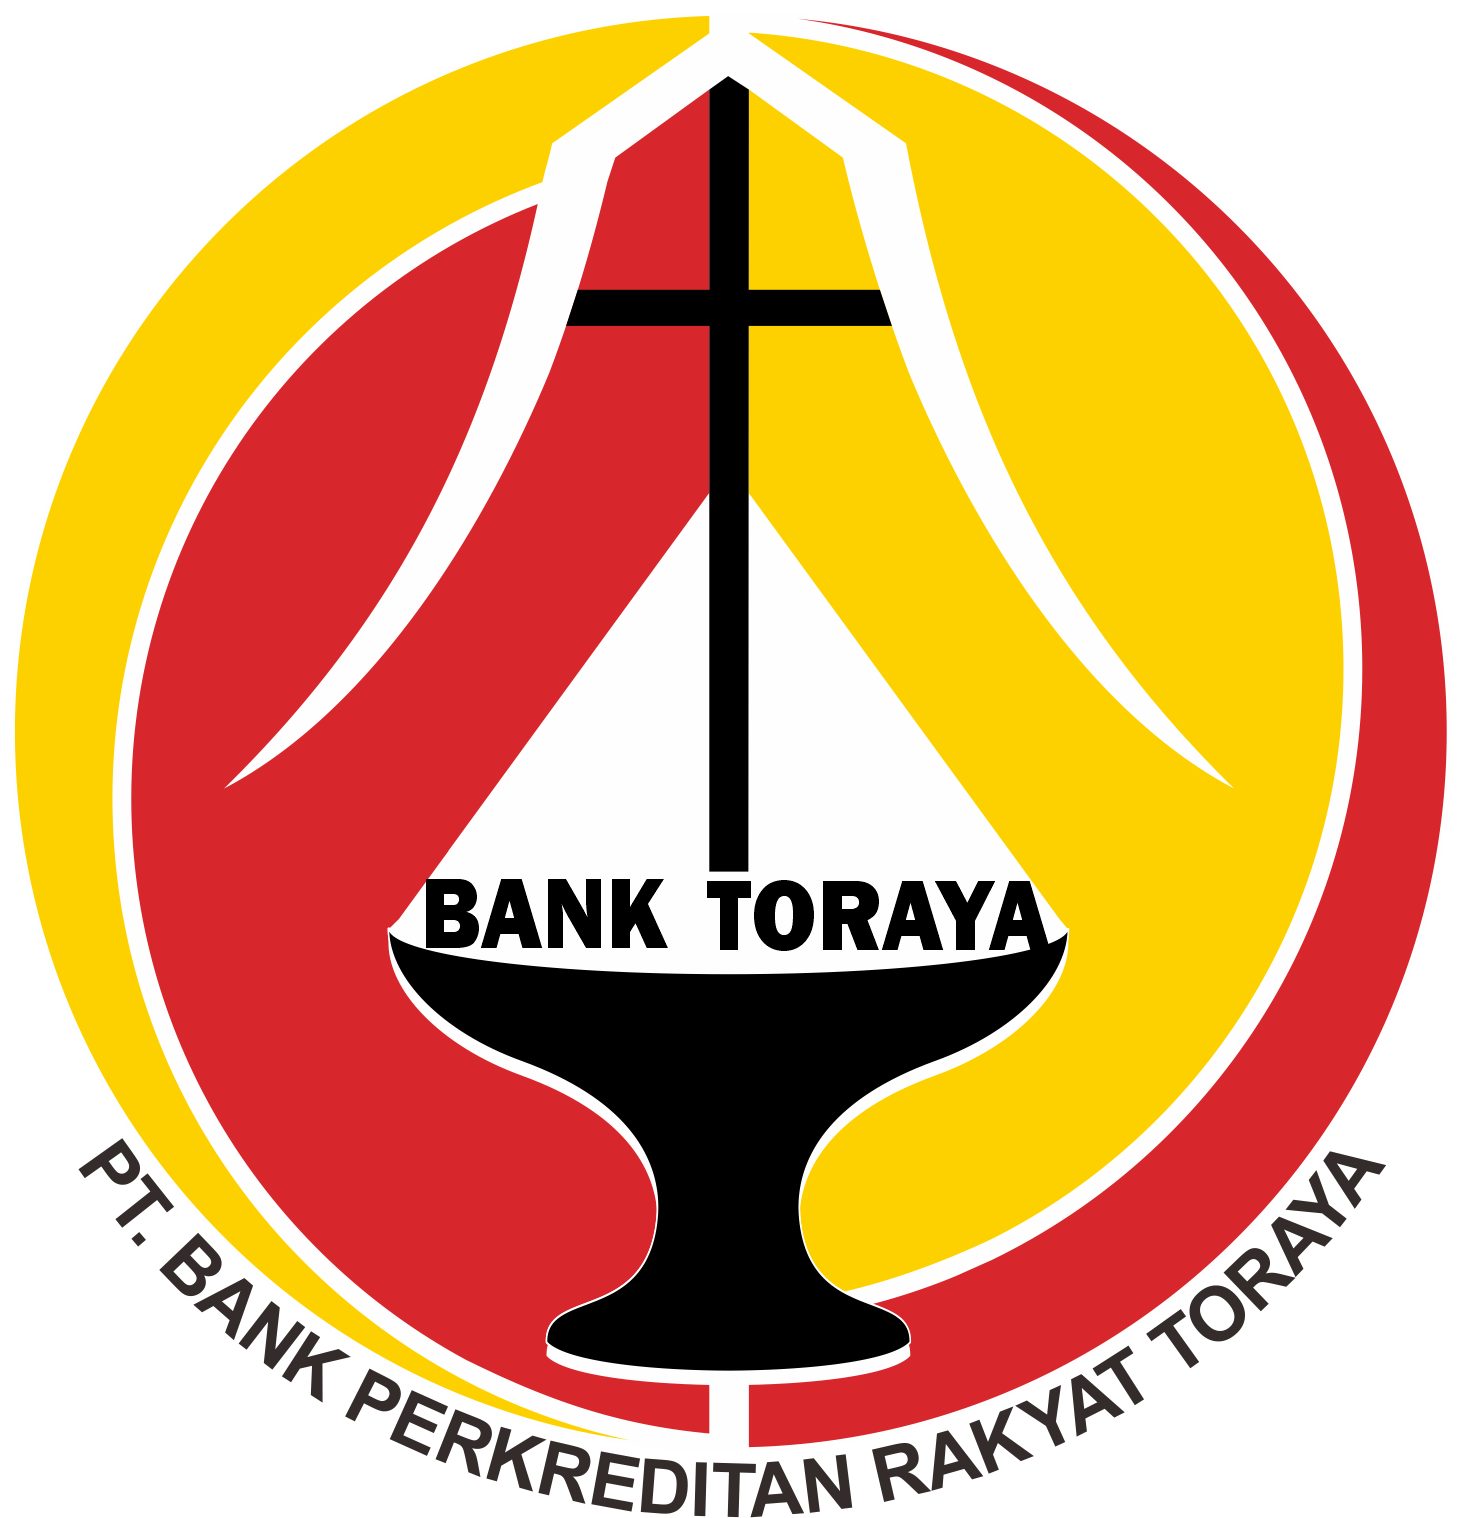 BANK TORAYA